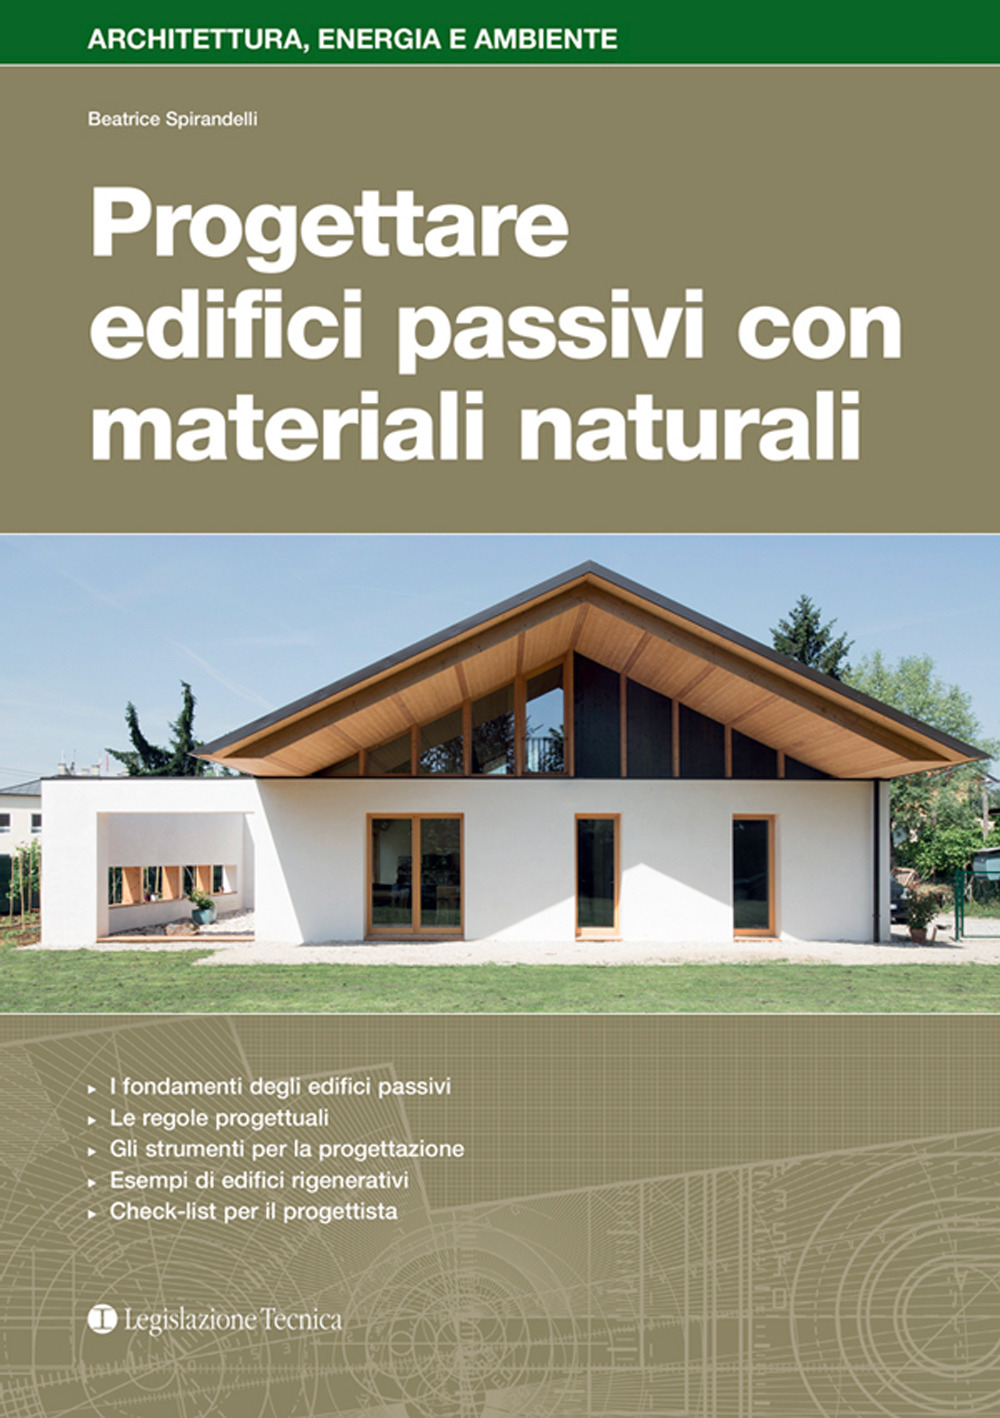 Libri Beatrice Spirandelli - Progettare Edifici Passivi Con Materiali Naturali NUOVO SIGILLATO, EDIZIONE DEL 12/10/2020 SUBITO DISPONIBILE